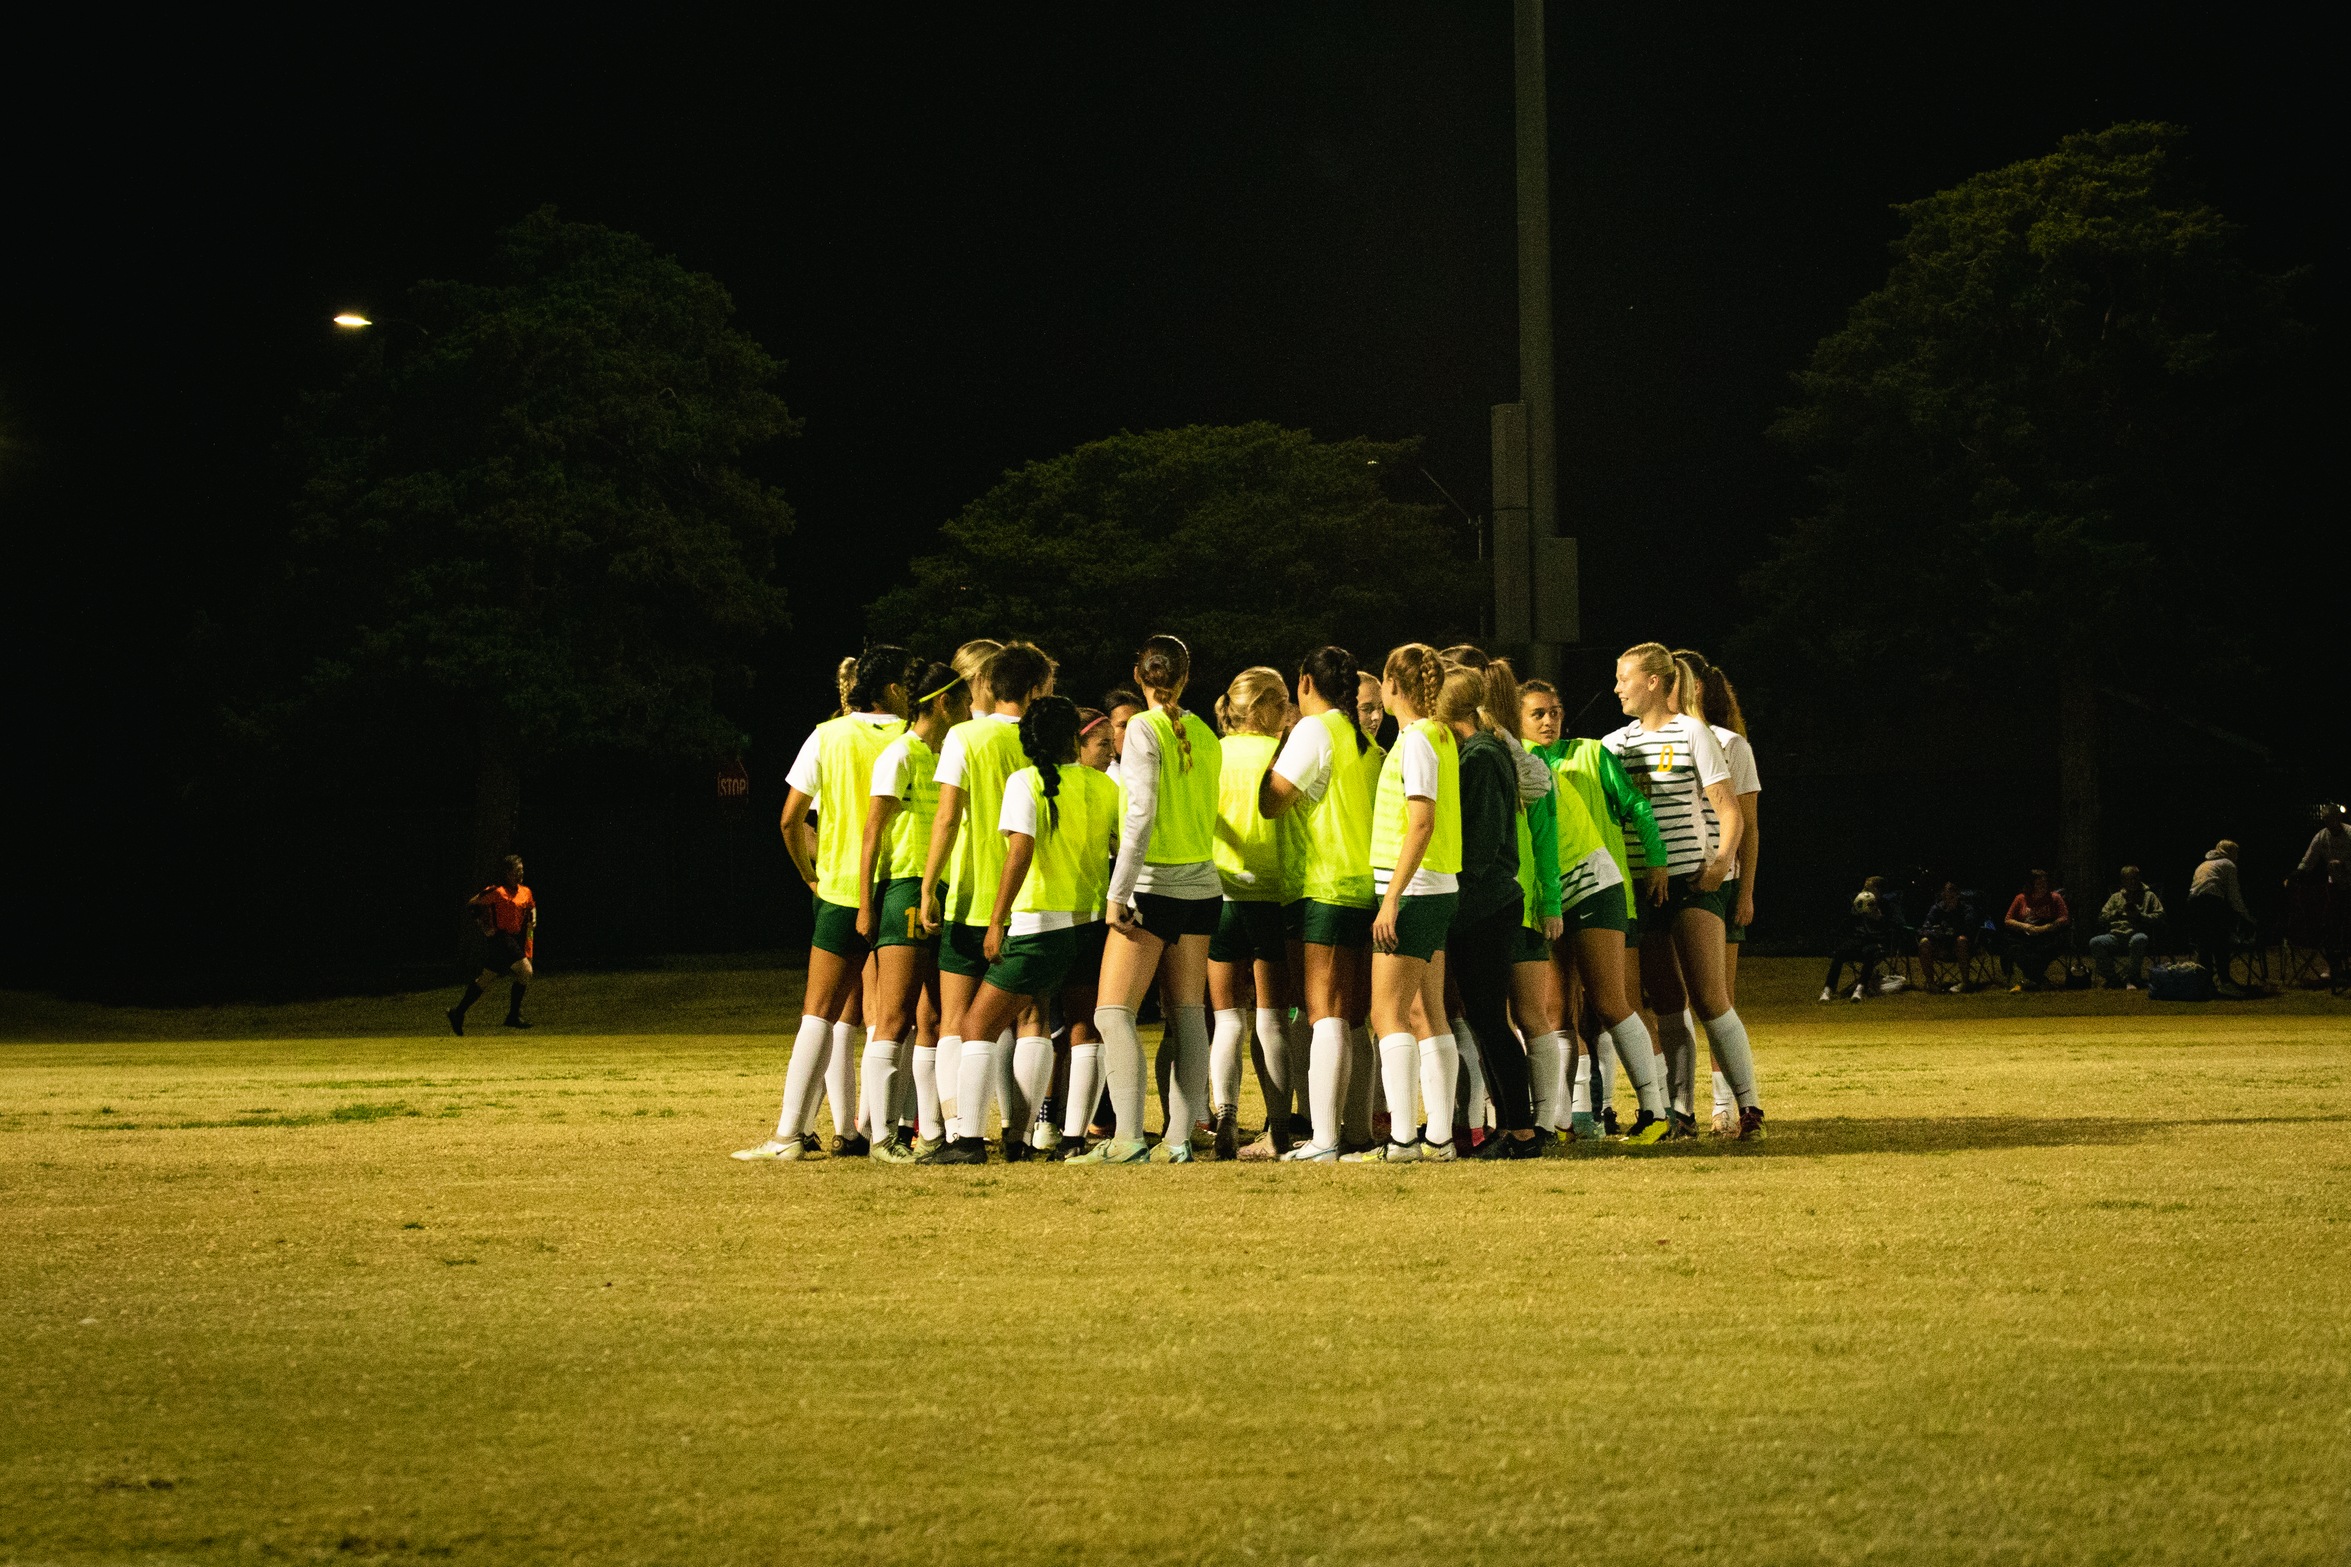 women's soccer team huddles before kick-off